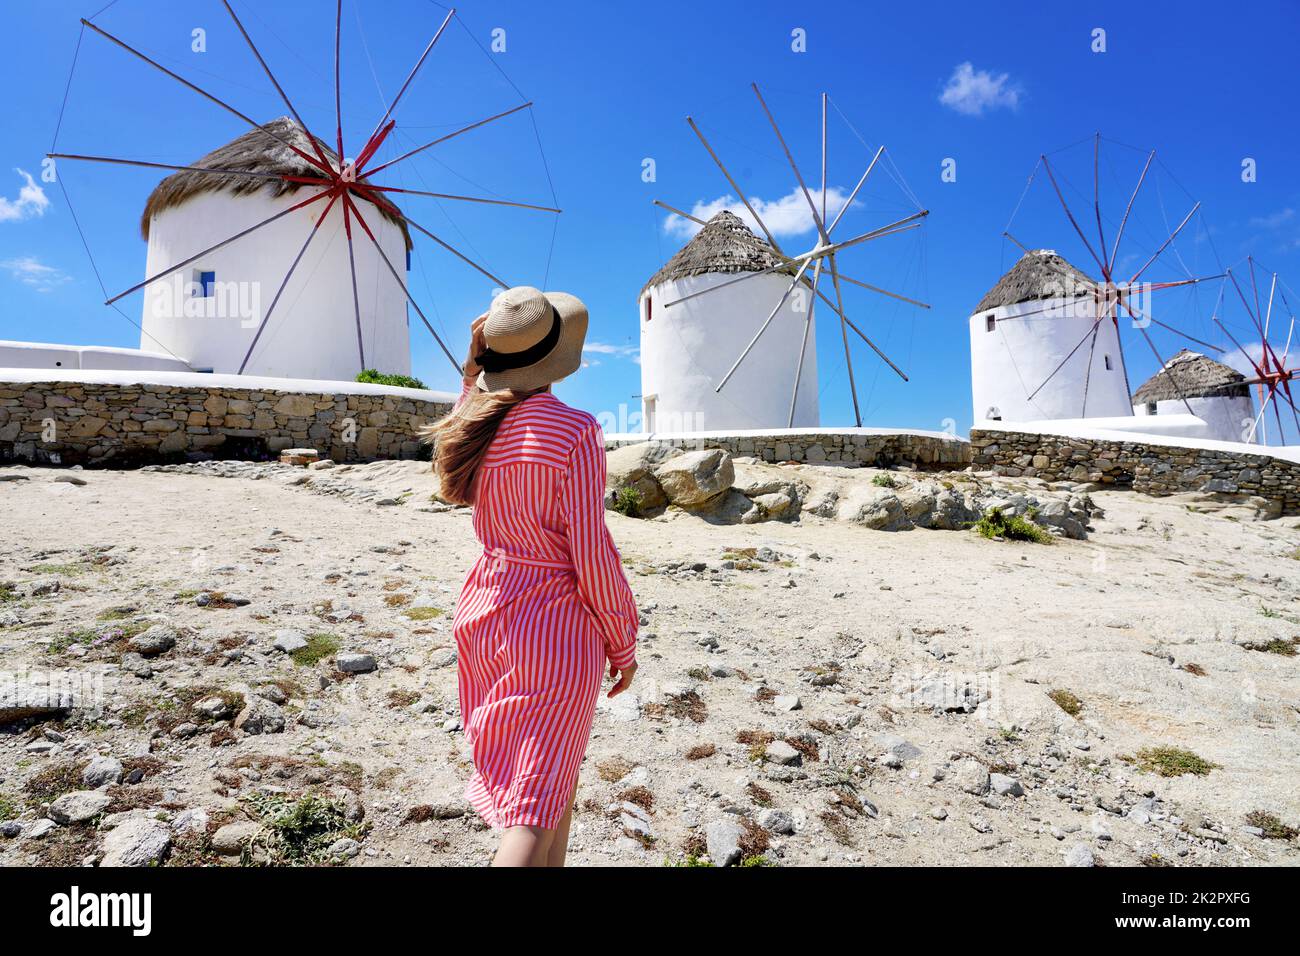 Giovane donna che cammina tra i tradizionali mulini a vento greci sull'isola di Mykonos, Cicladi, Grecia Foto Stock